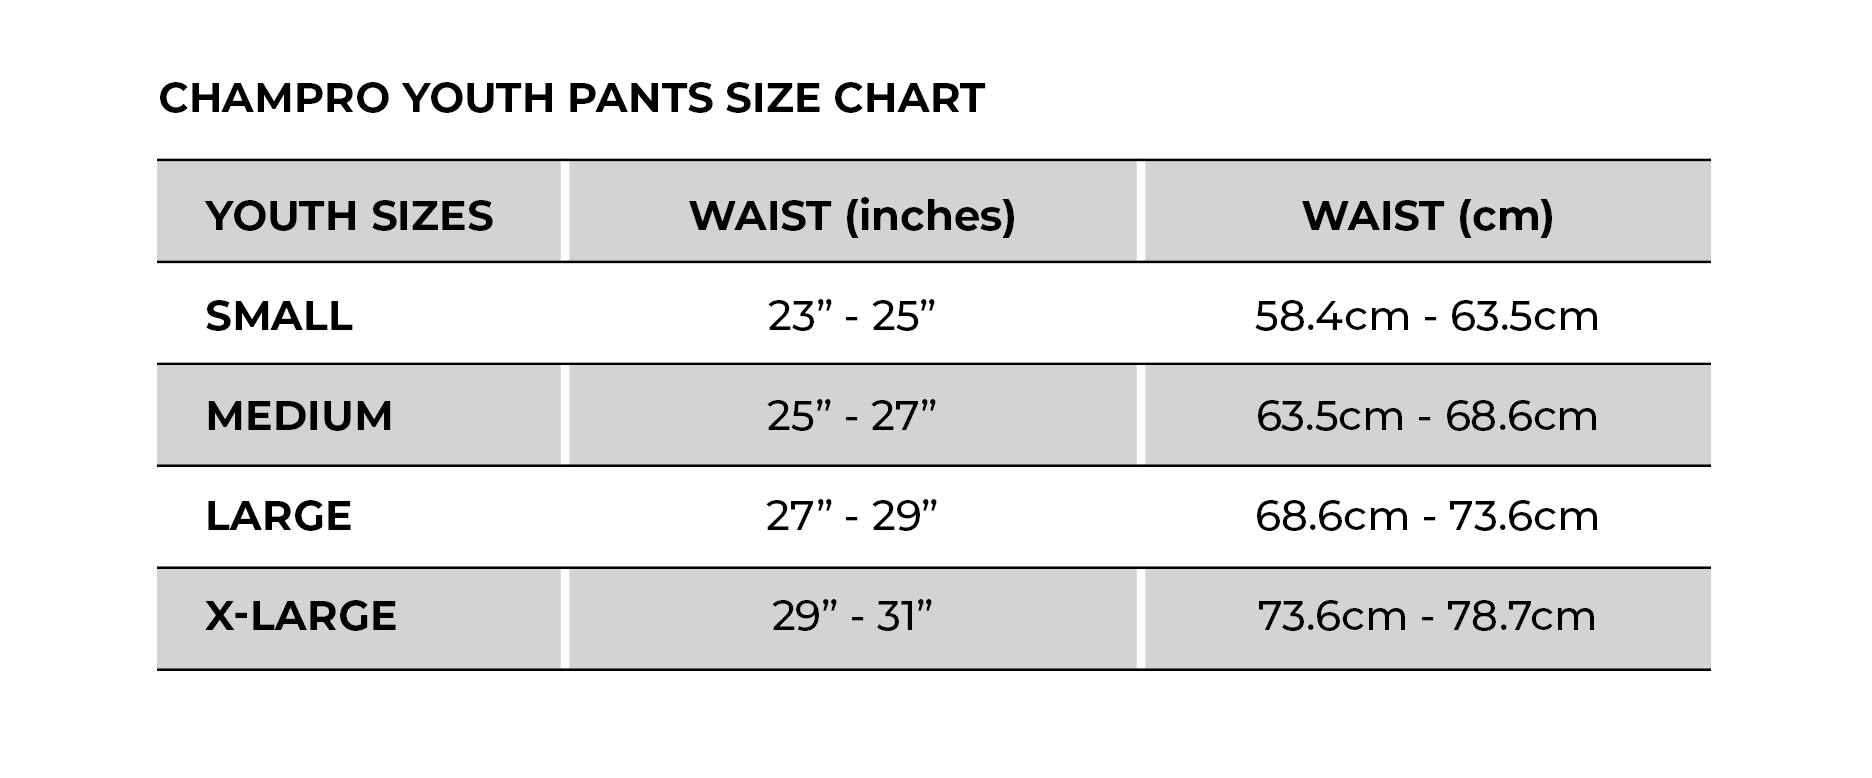 youth baseball pants size chart